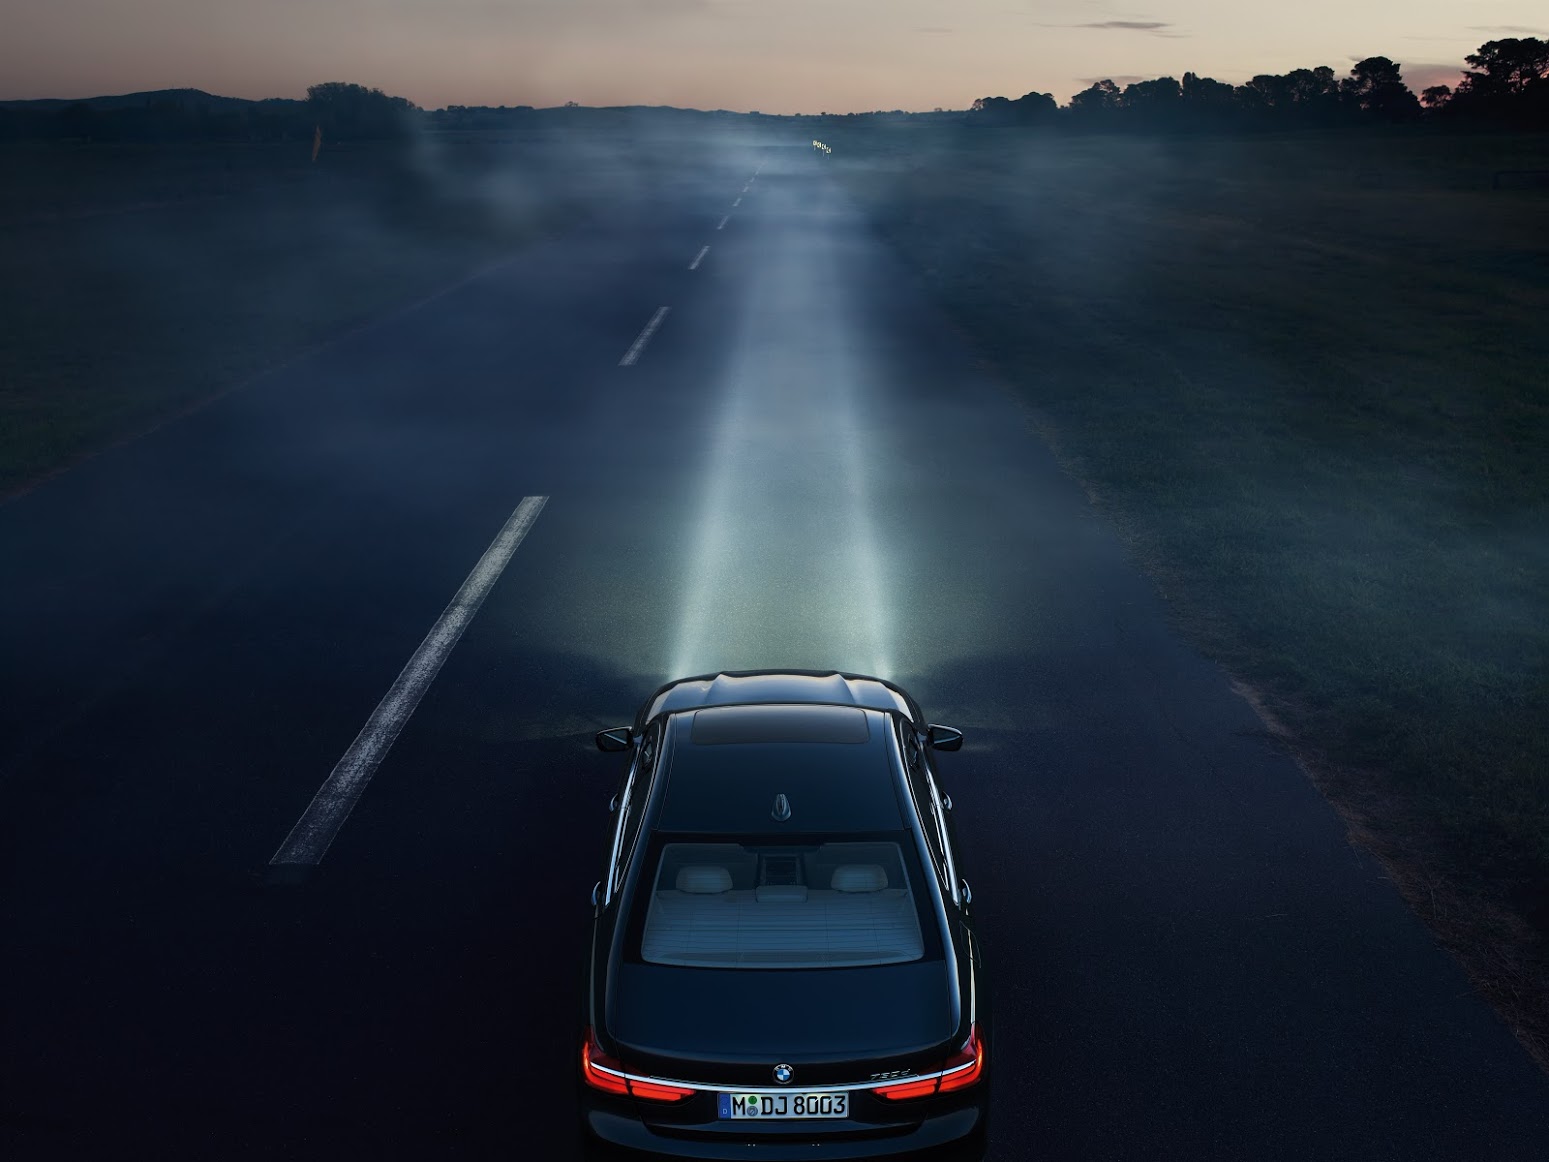 
Đèn pha công nghệ laser cho phép chiếu sáng tới 600 m của BMW 750Li.
